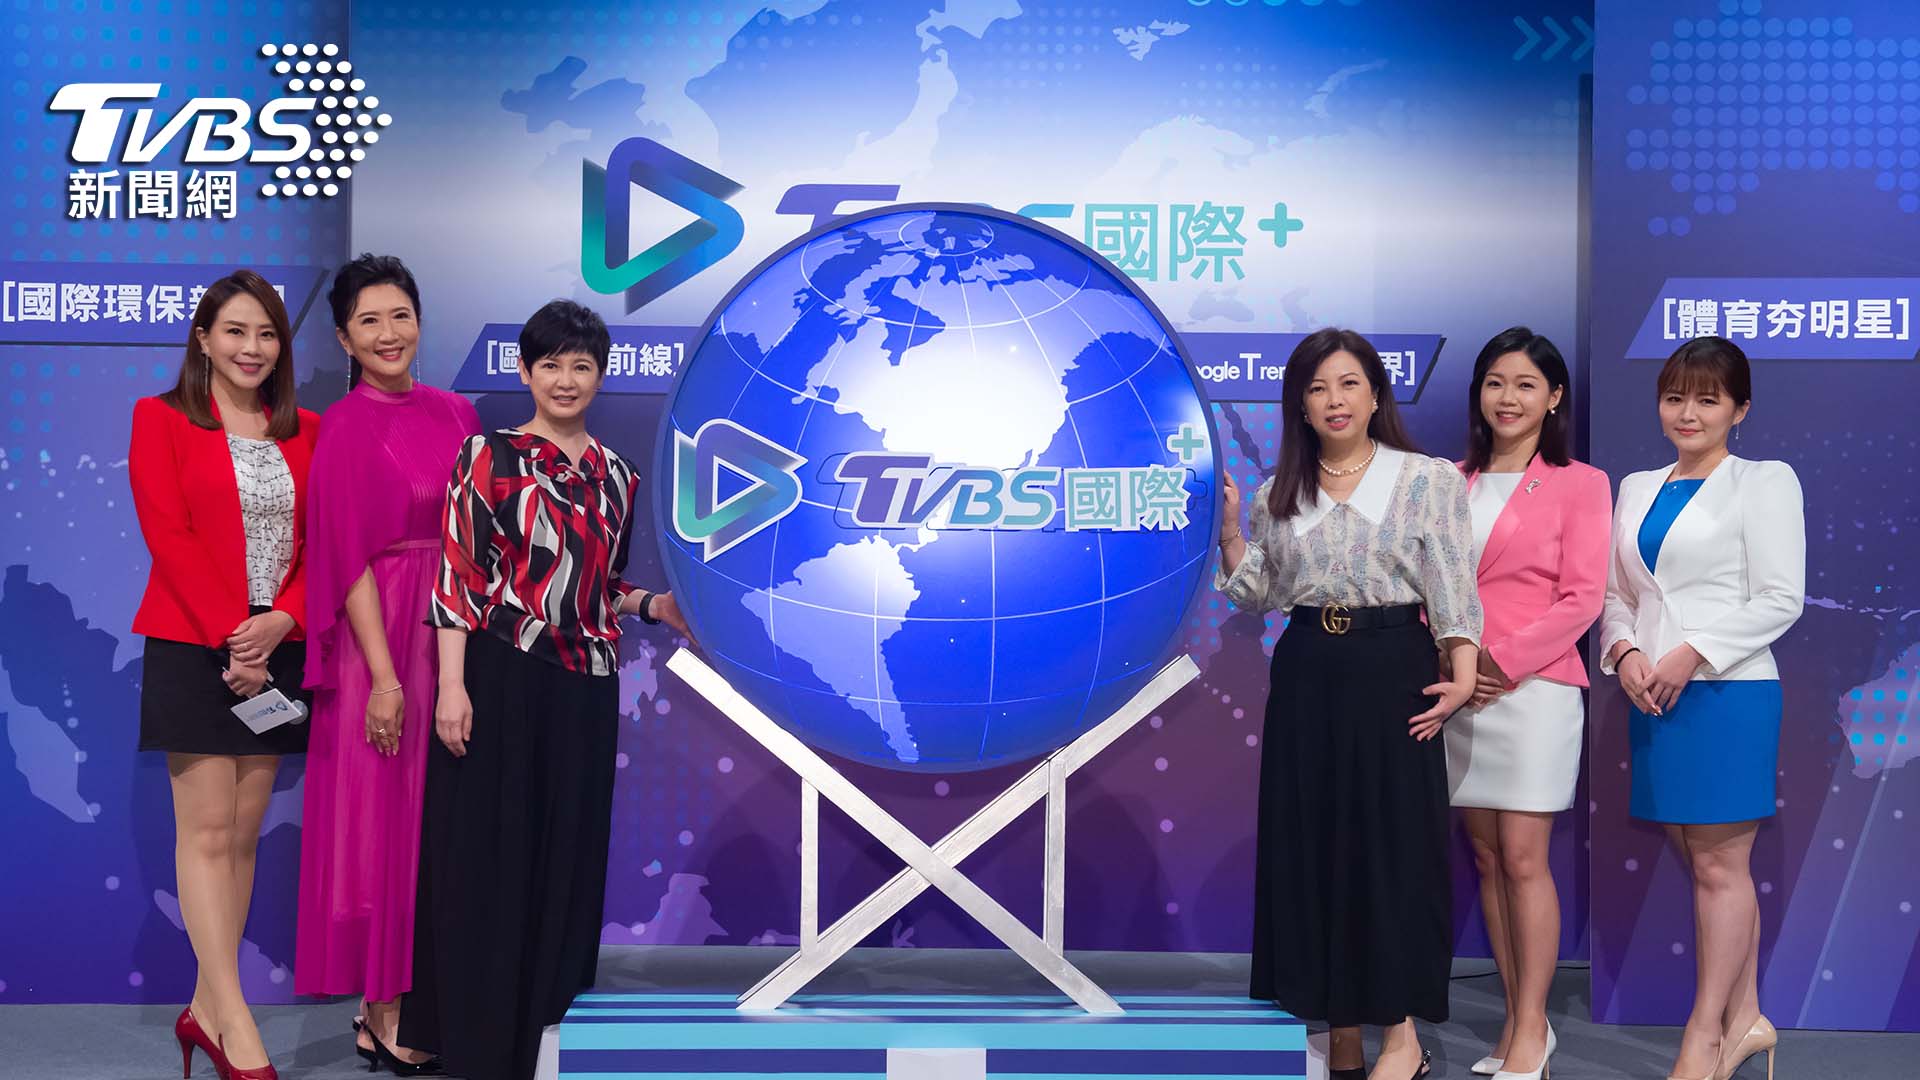  TVBS舉辦線上記者會，正式亮相國際新聞 IP《TVBS國際+》 《TVBS國際+》線上記者會 國際新聞IP亮相 APP 行動跨域 掌握全球視野